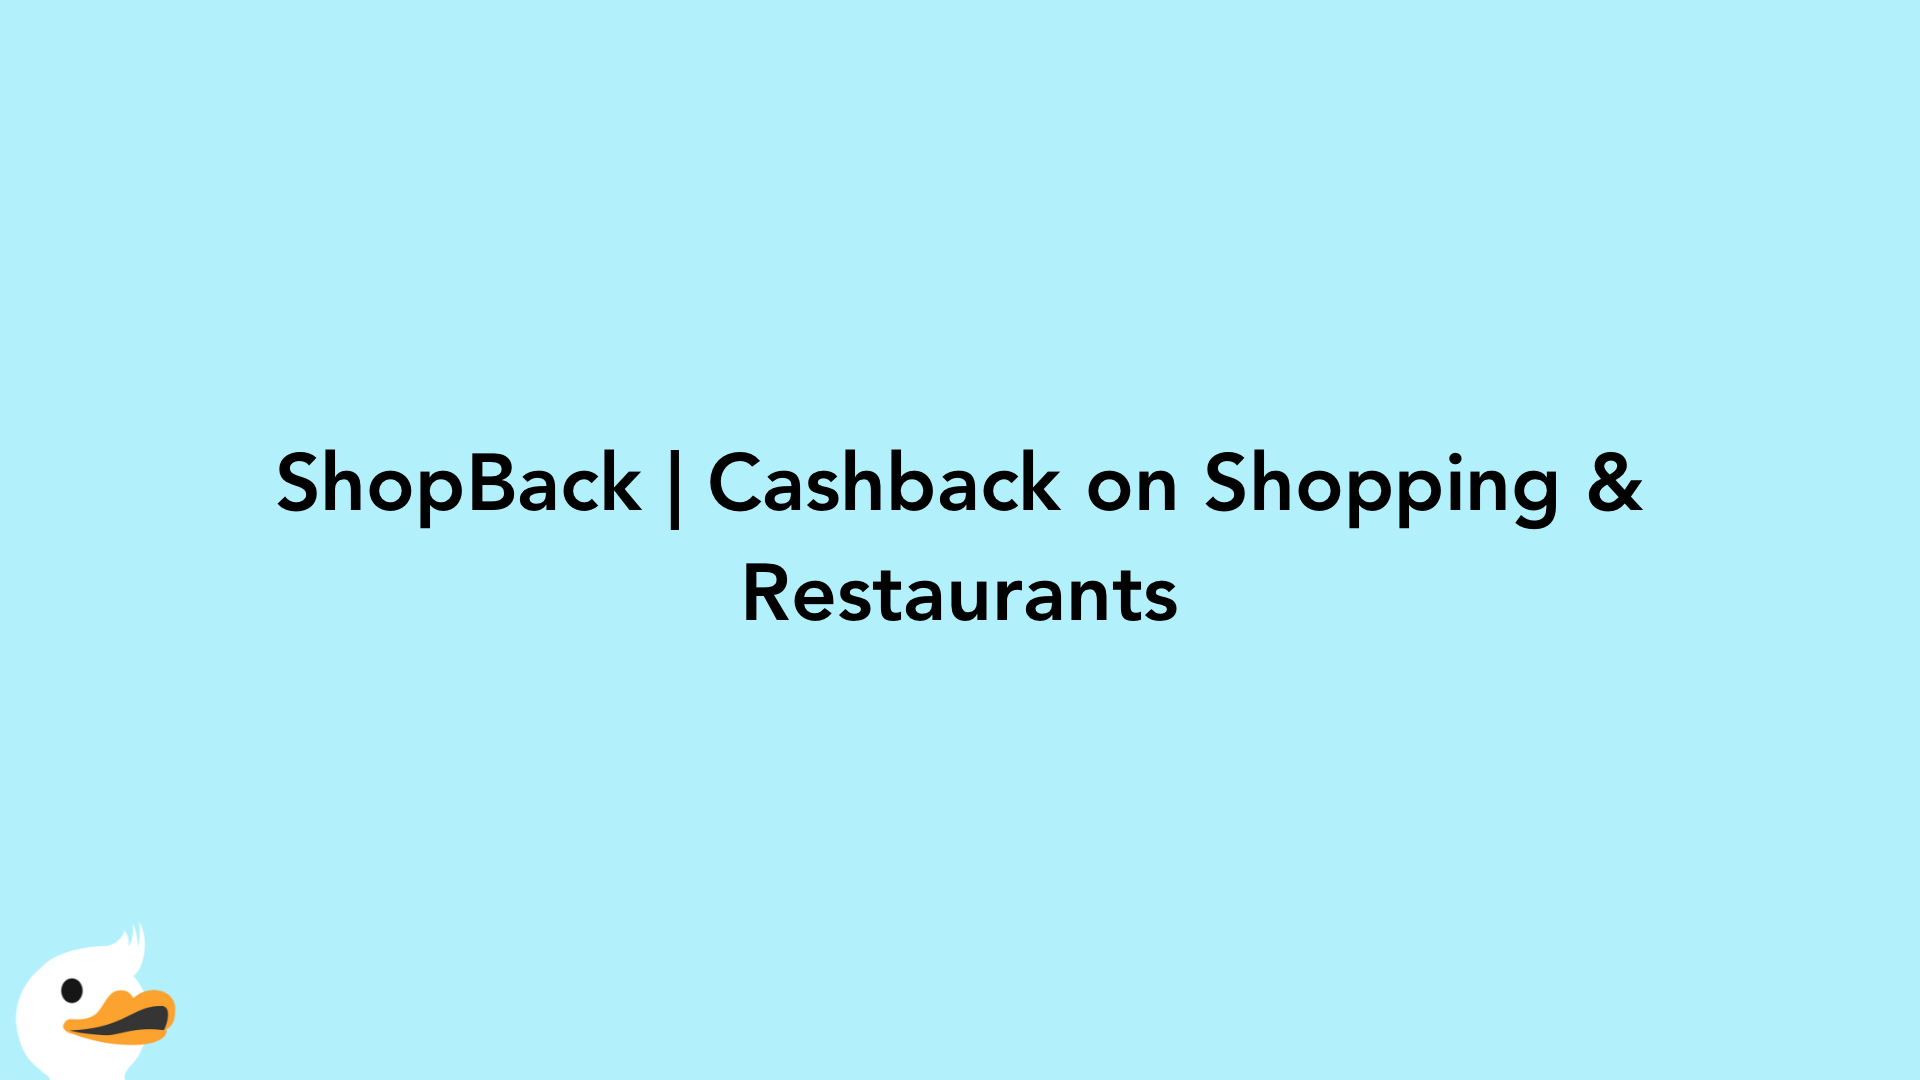 ShopBack | Cashback on Shopping & Restaurants